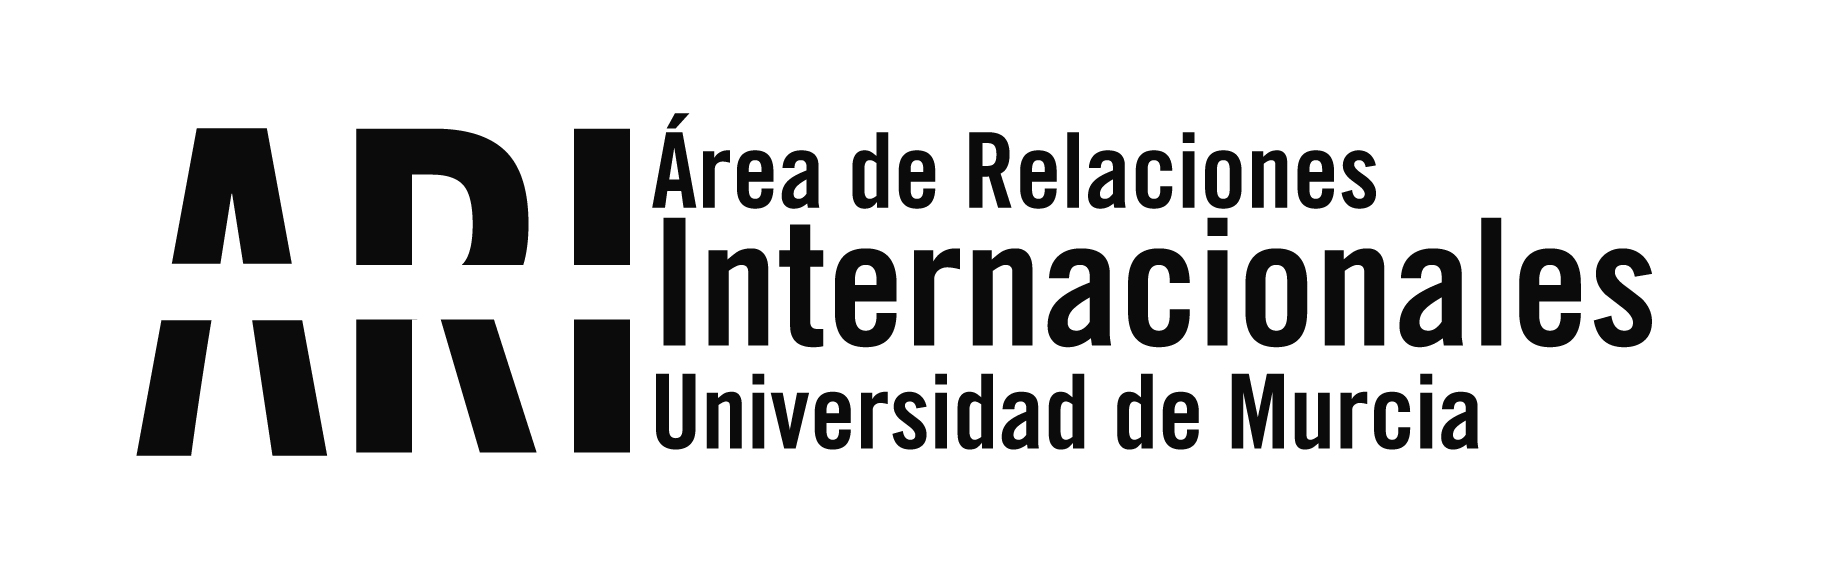 Estudiantes internacionales de la UMU descendientes de murcianos son recibidos por el Gobierno regional - Área de Relaciones Internacionales